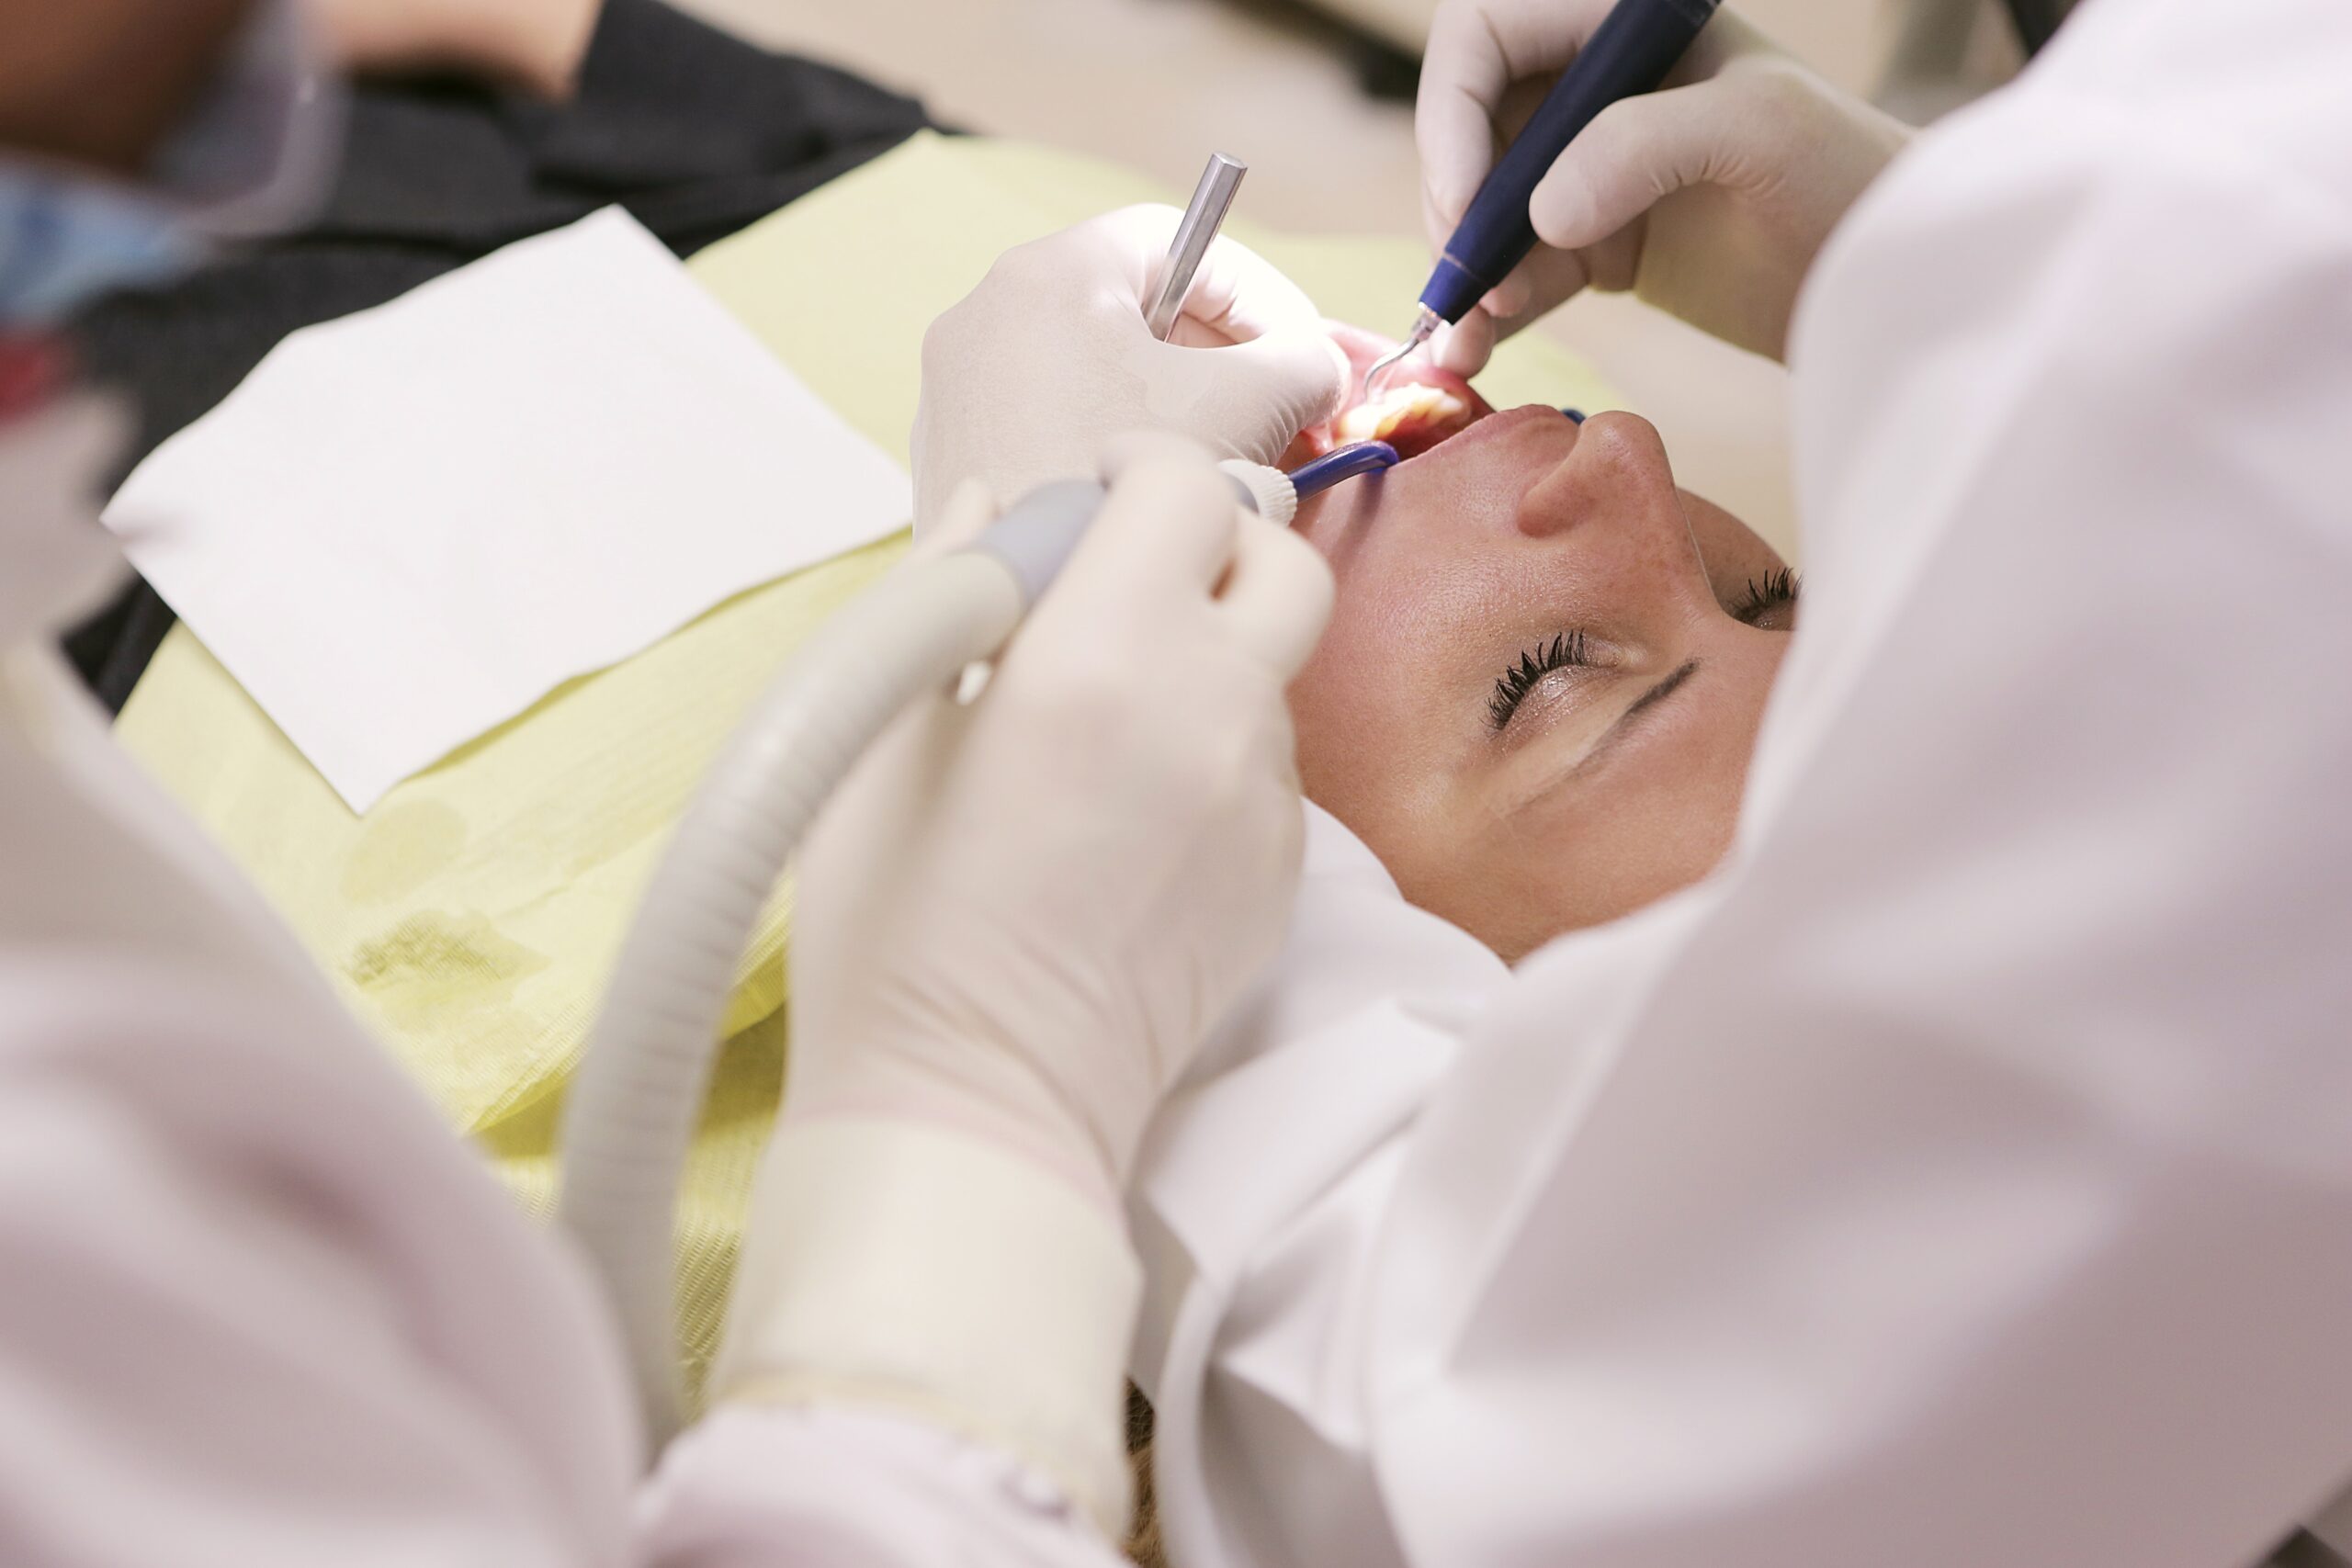 歯列矯正の手術と入院について